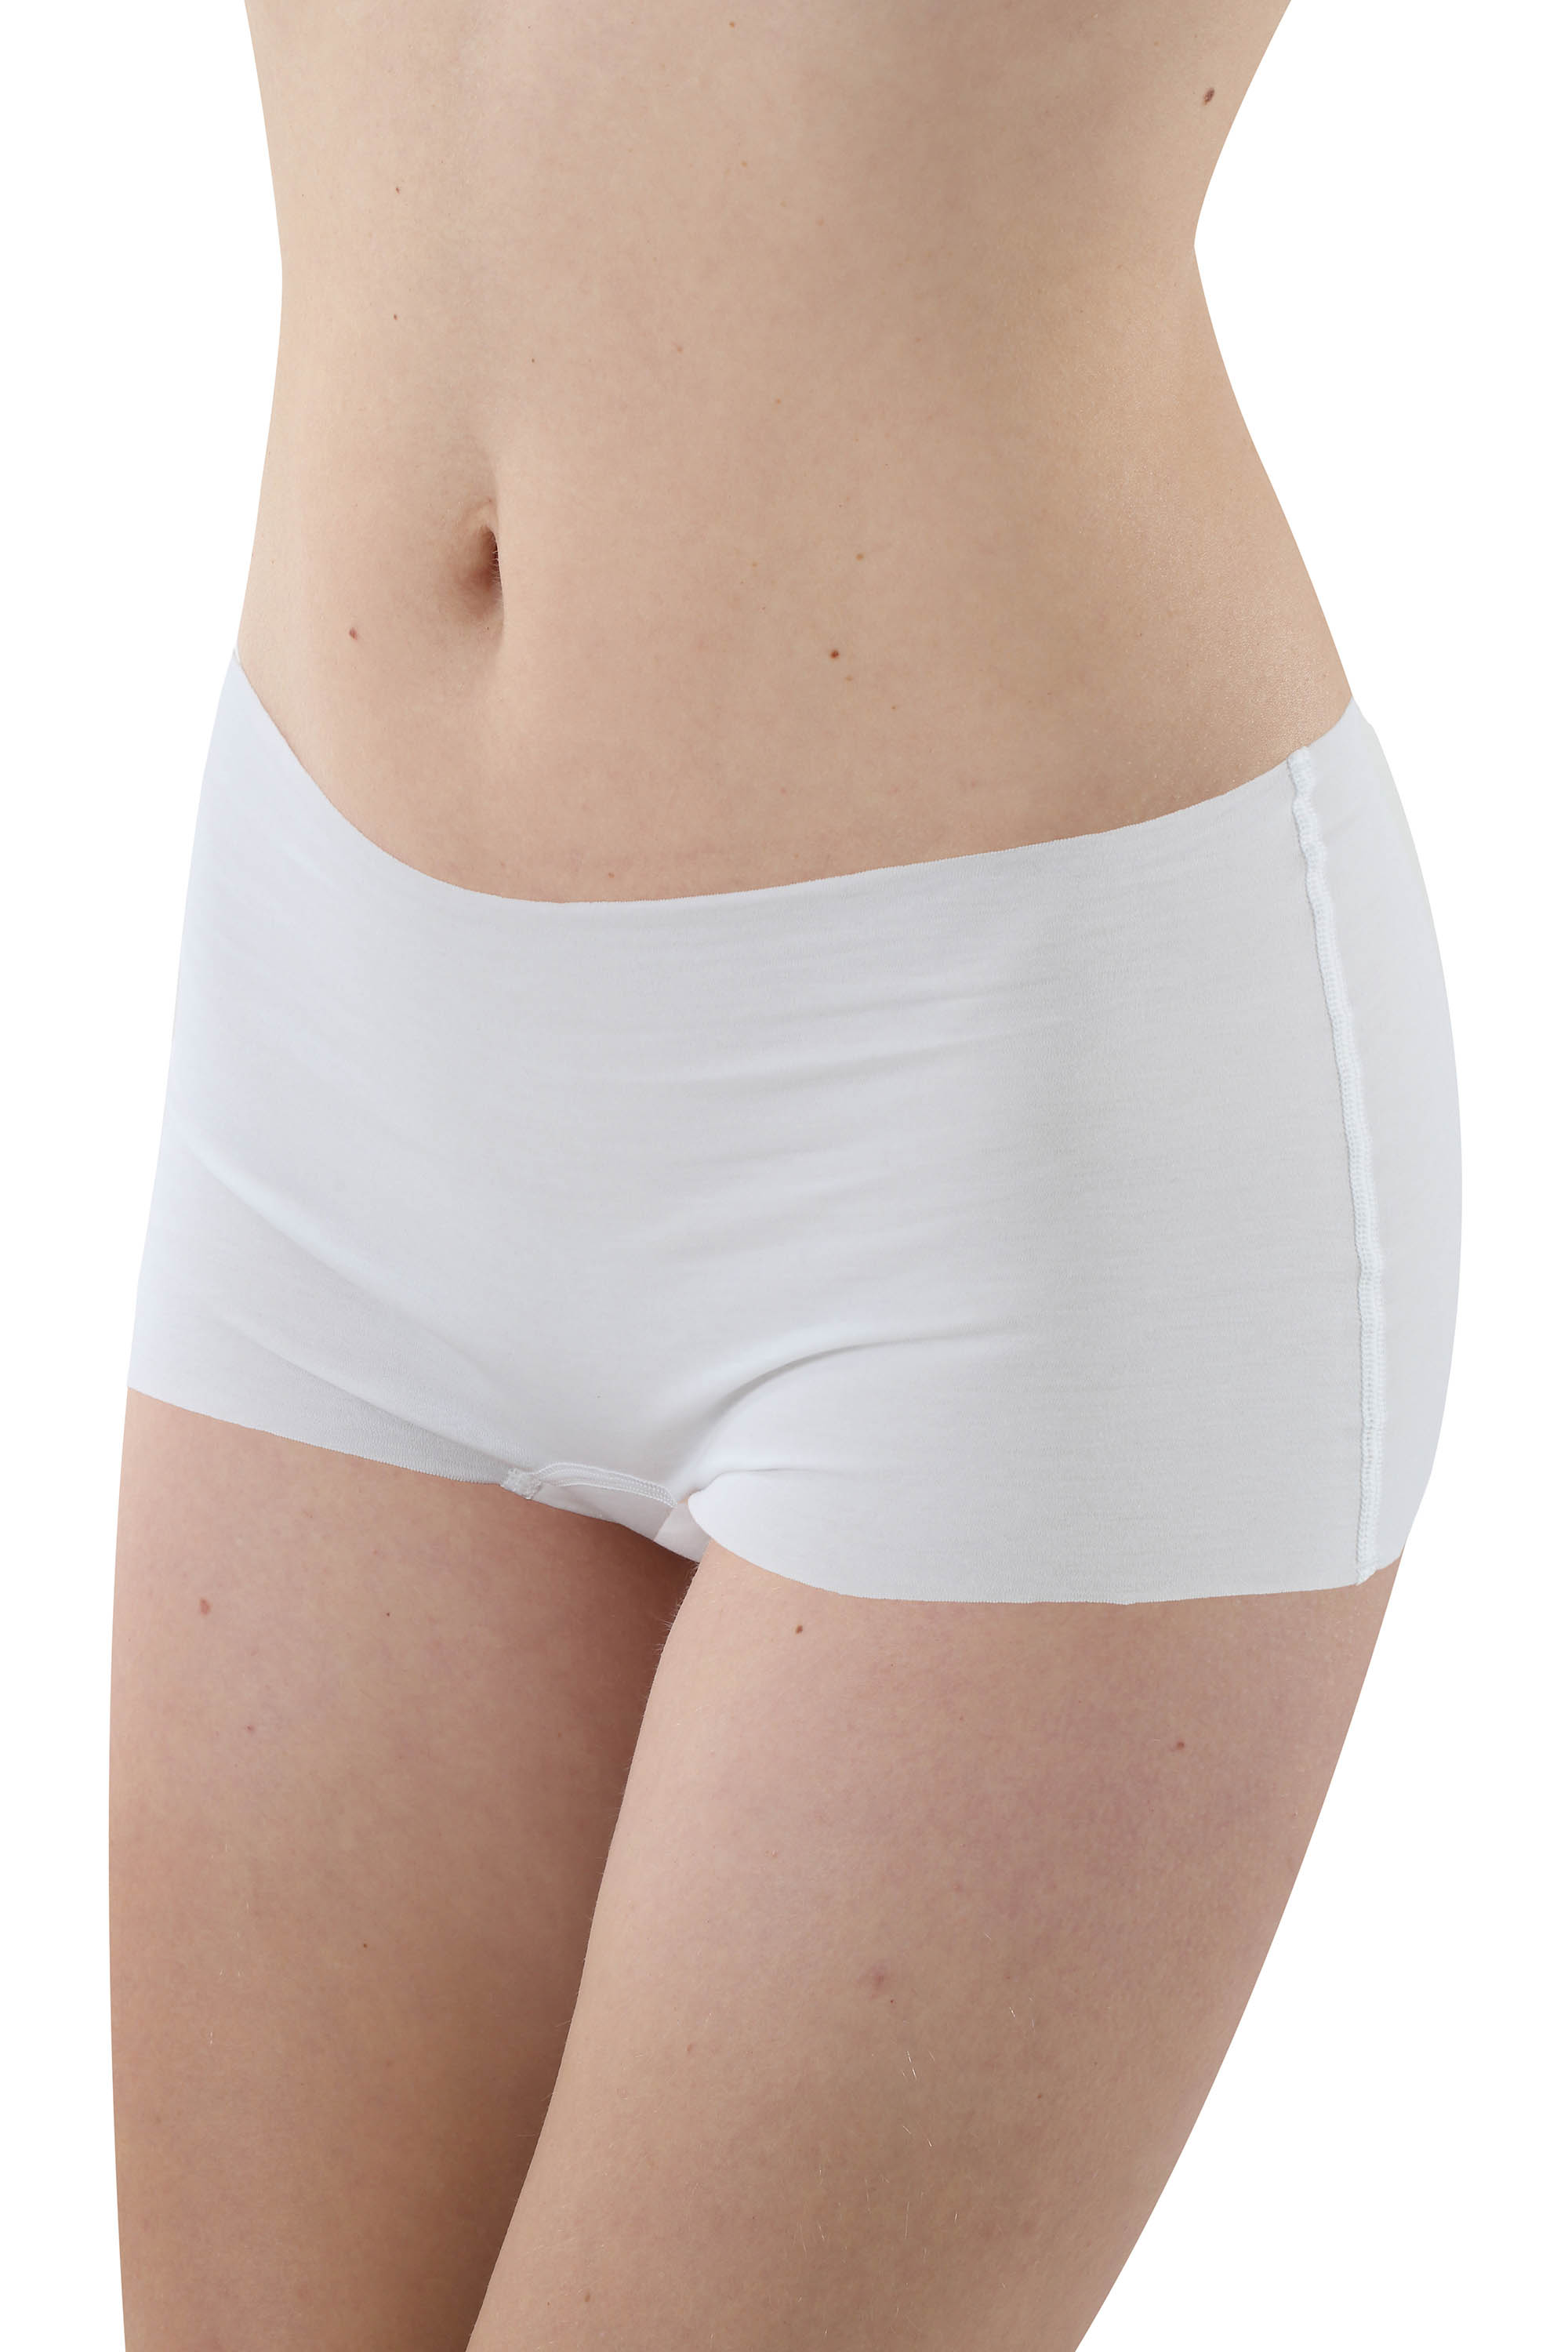 Libella Culotte a Pantaloncini Vita Bassa Donna Pacco da 6 Mutande Senza Cuciture in Microfibra 3908 